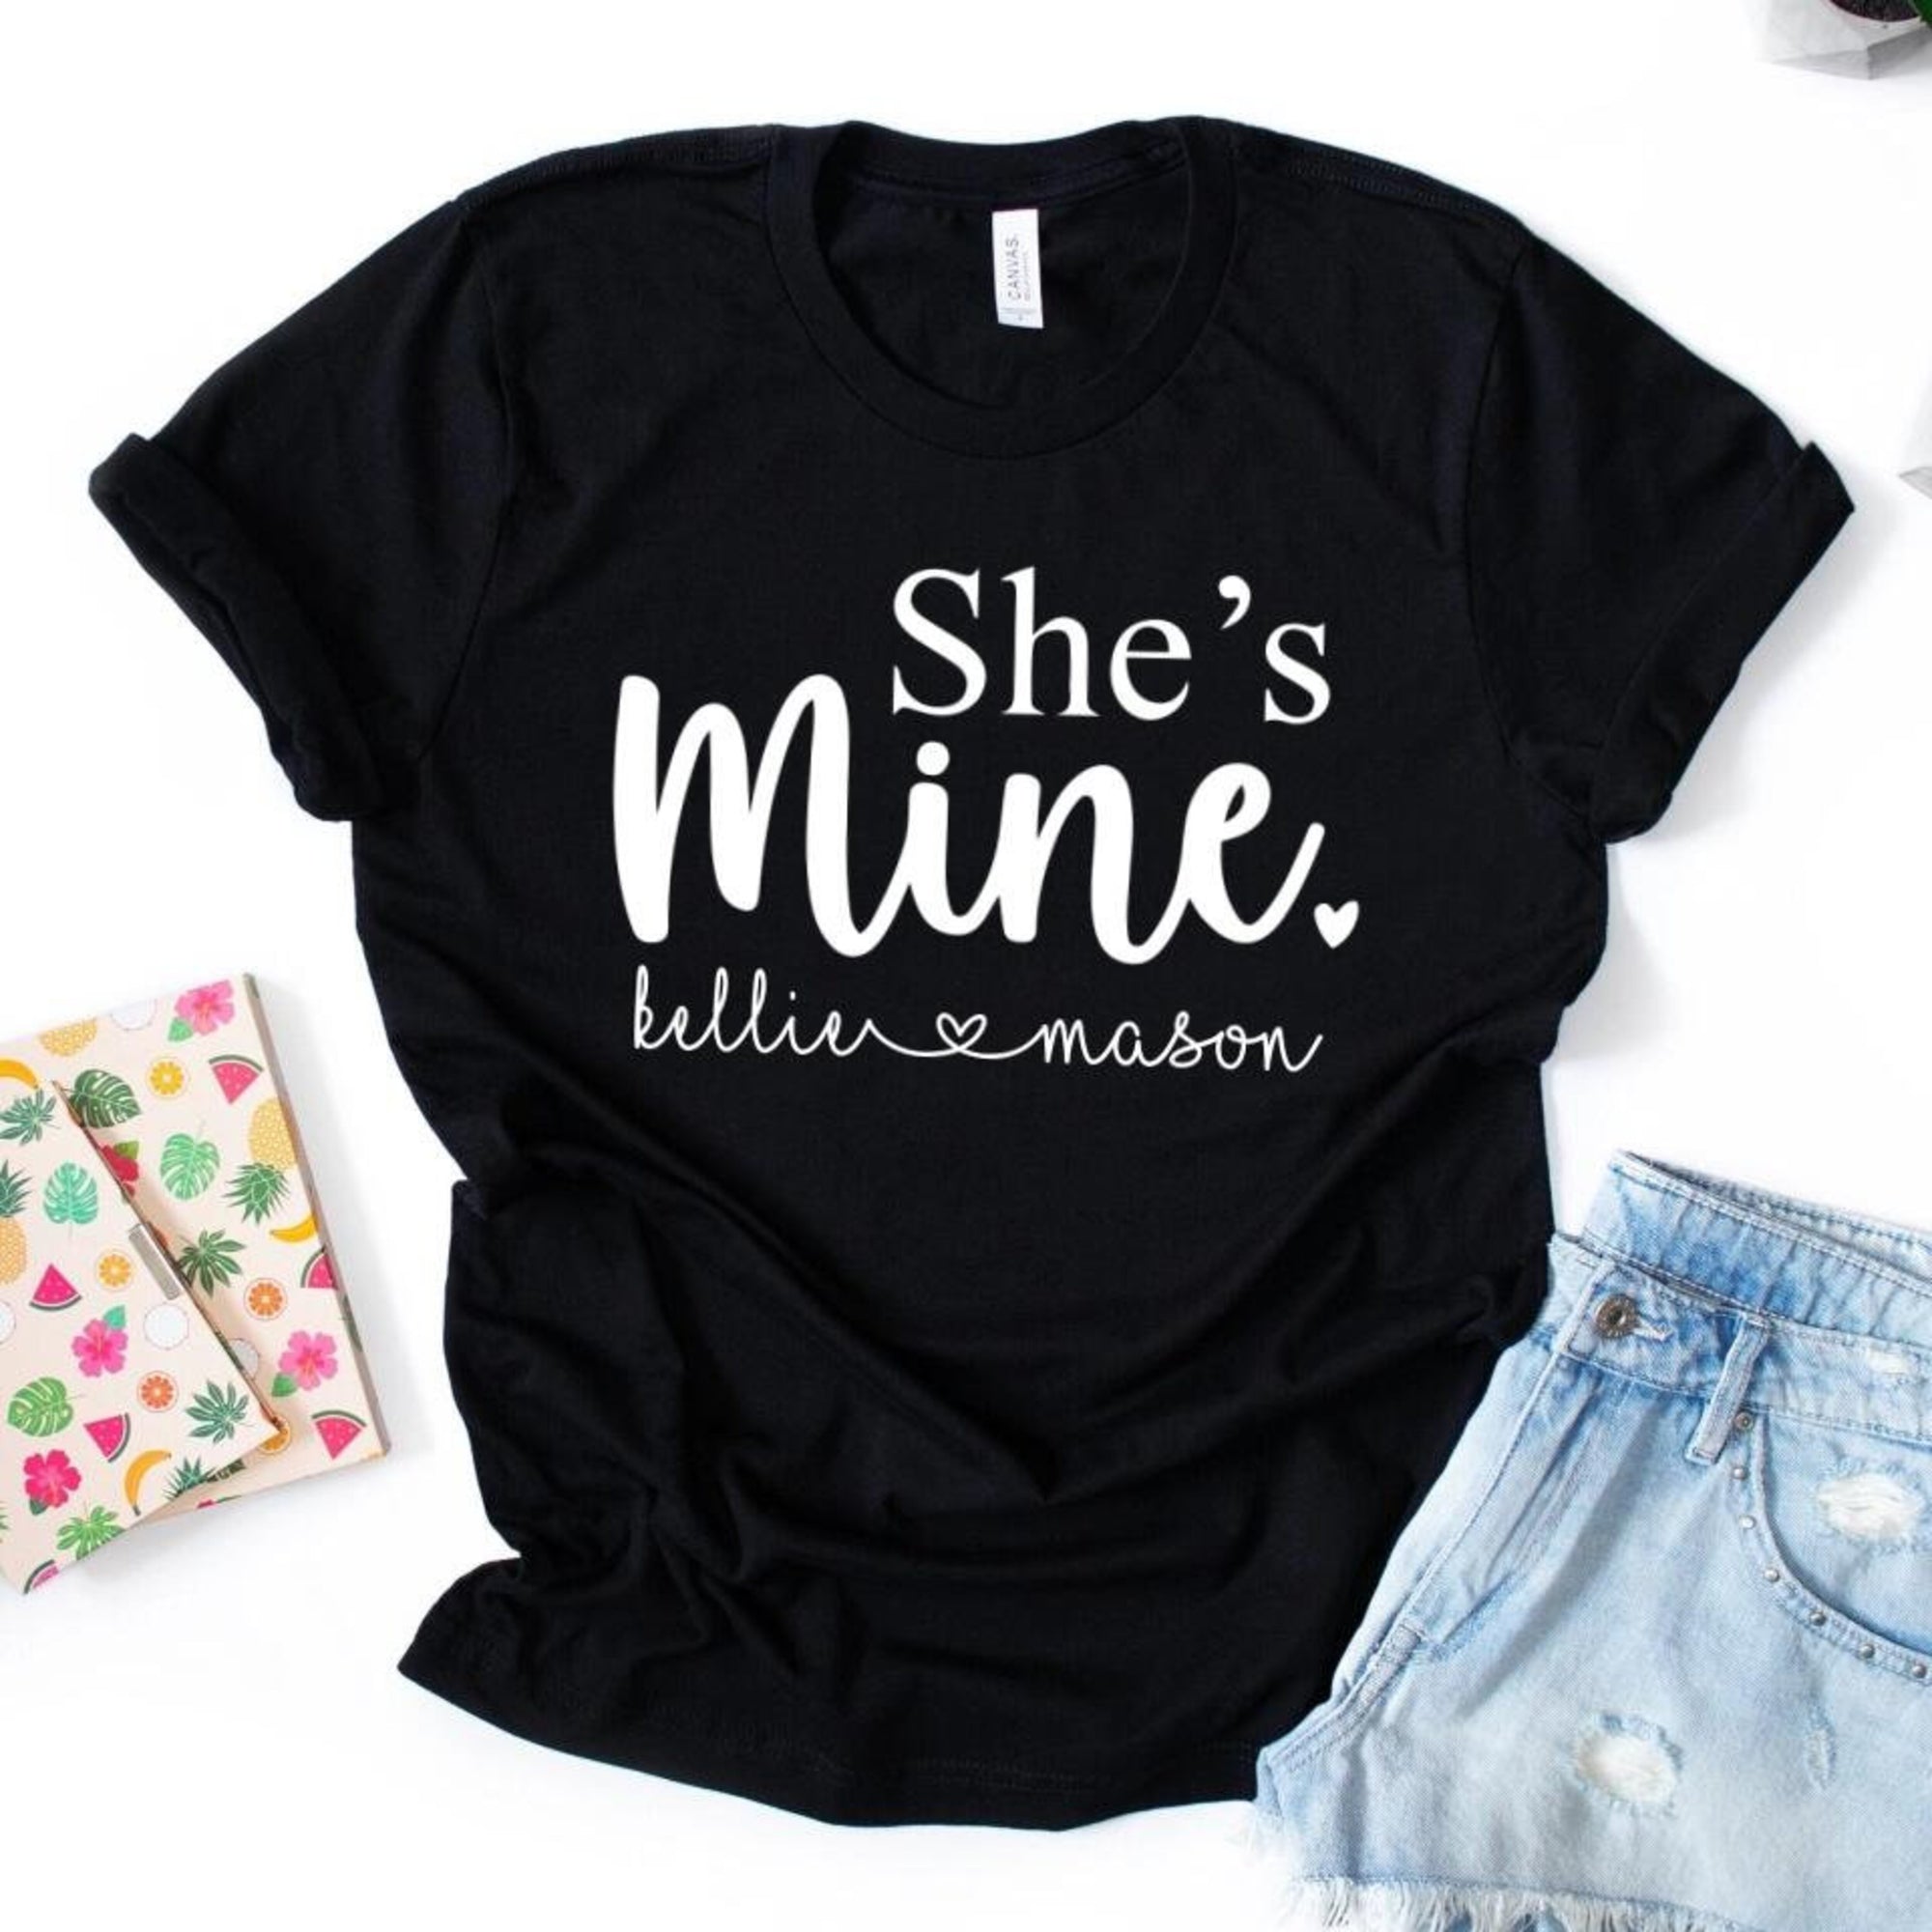 She's Mine and He's Mine Couple Shirt, Honeymoon T-shirt, Valentine's Day Shirt